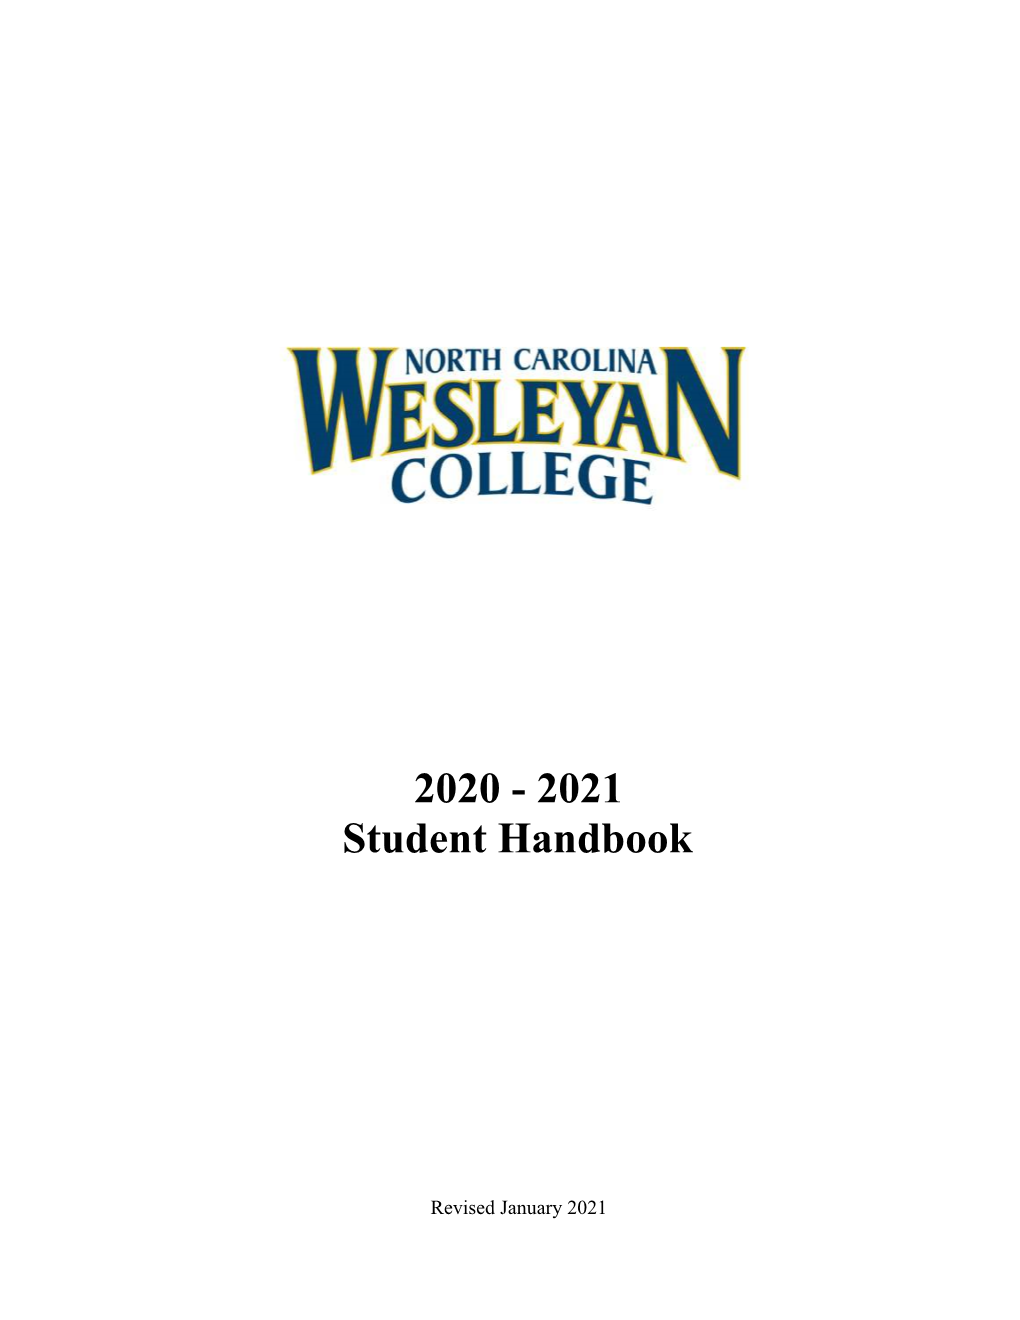 2020 - 2021 Student Handbook